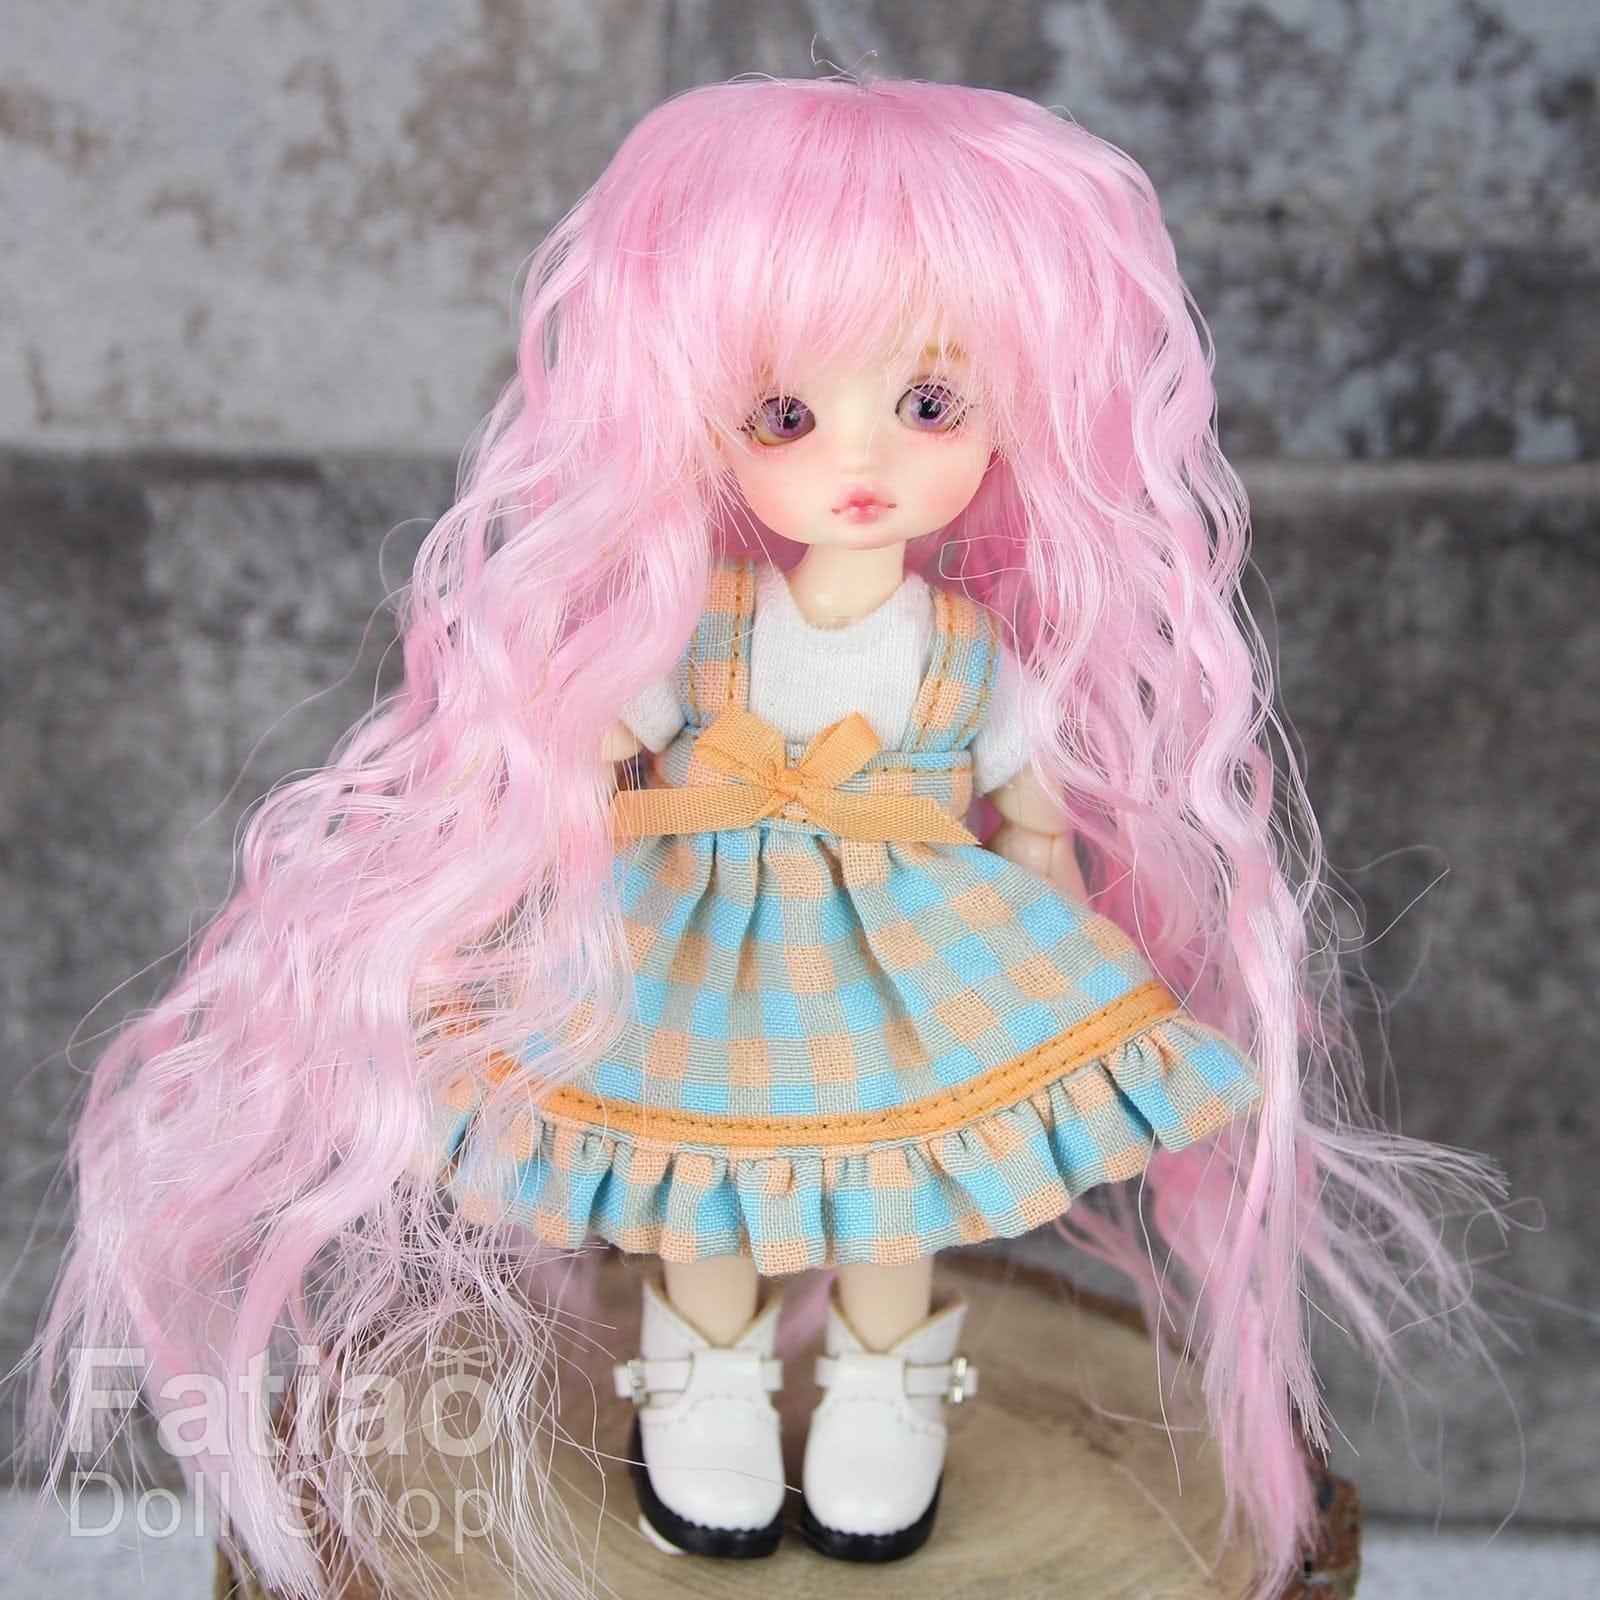 【Fatiao Doll Shop】FWF-085 娃用假髮 多色 / 3-4吋 BJD 12分 pukipuki